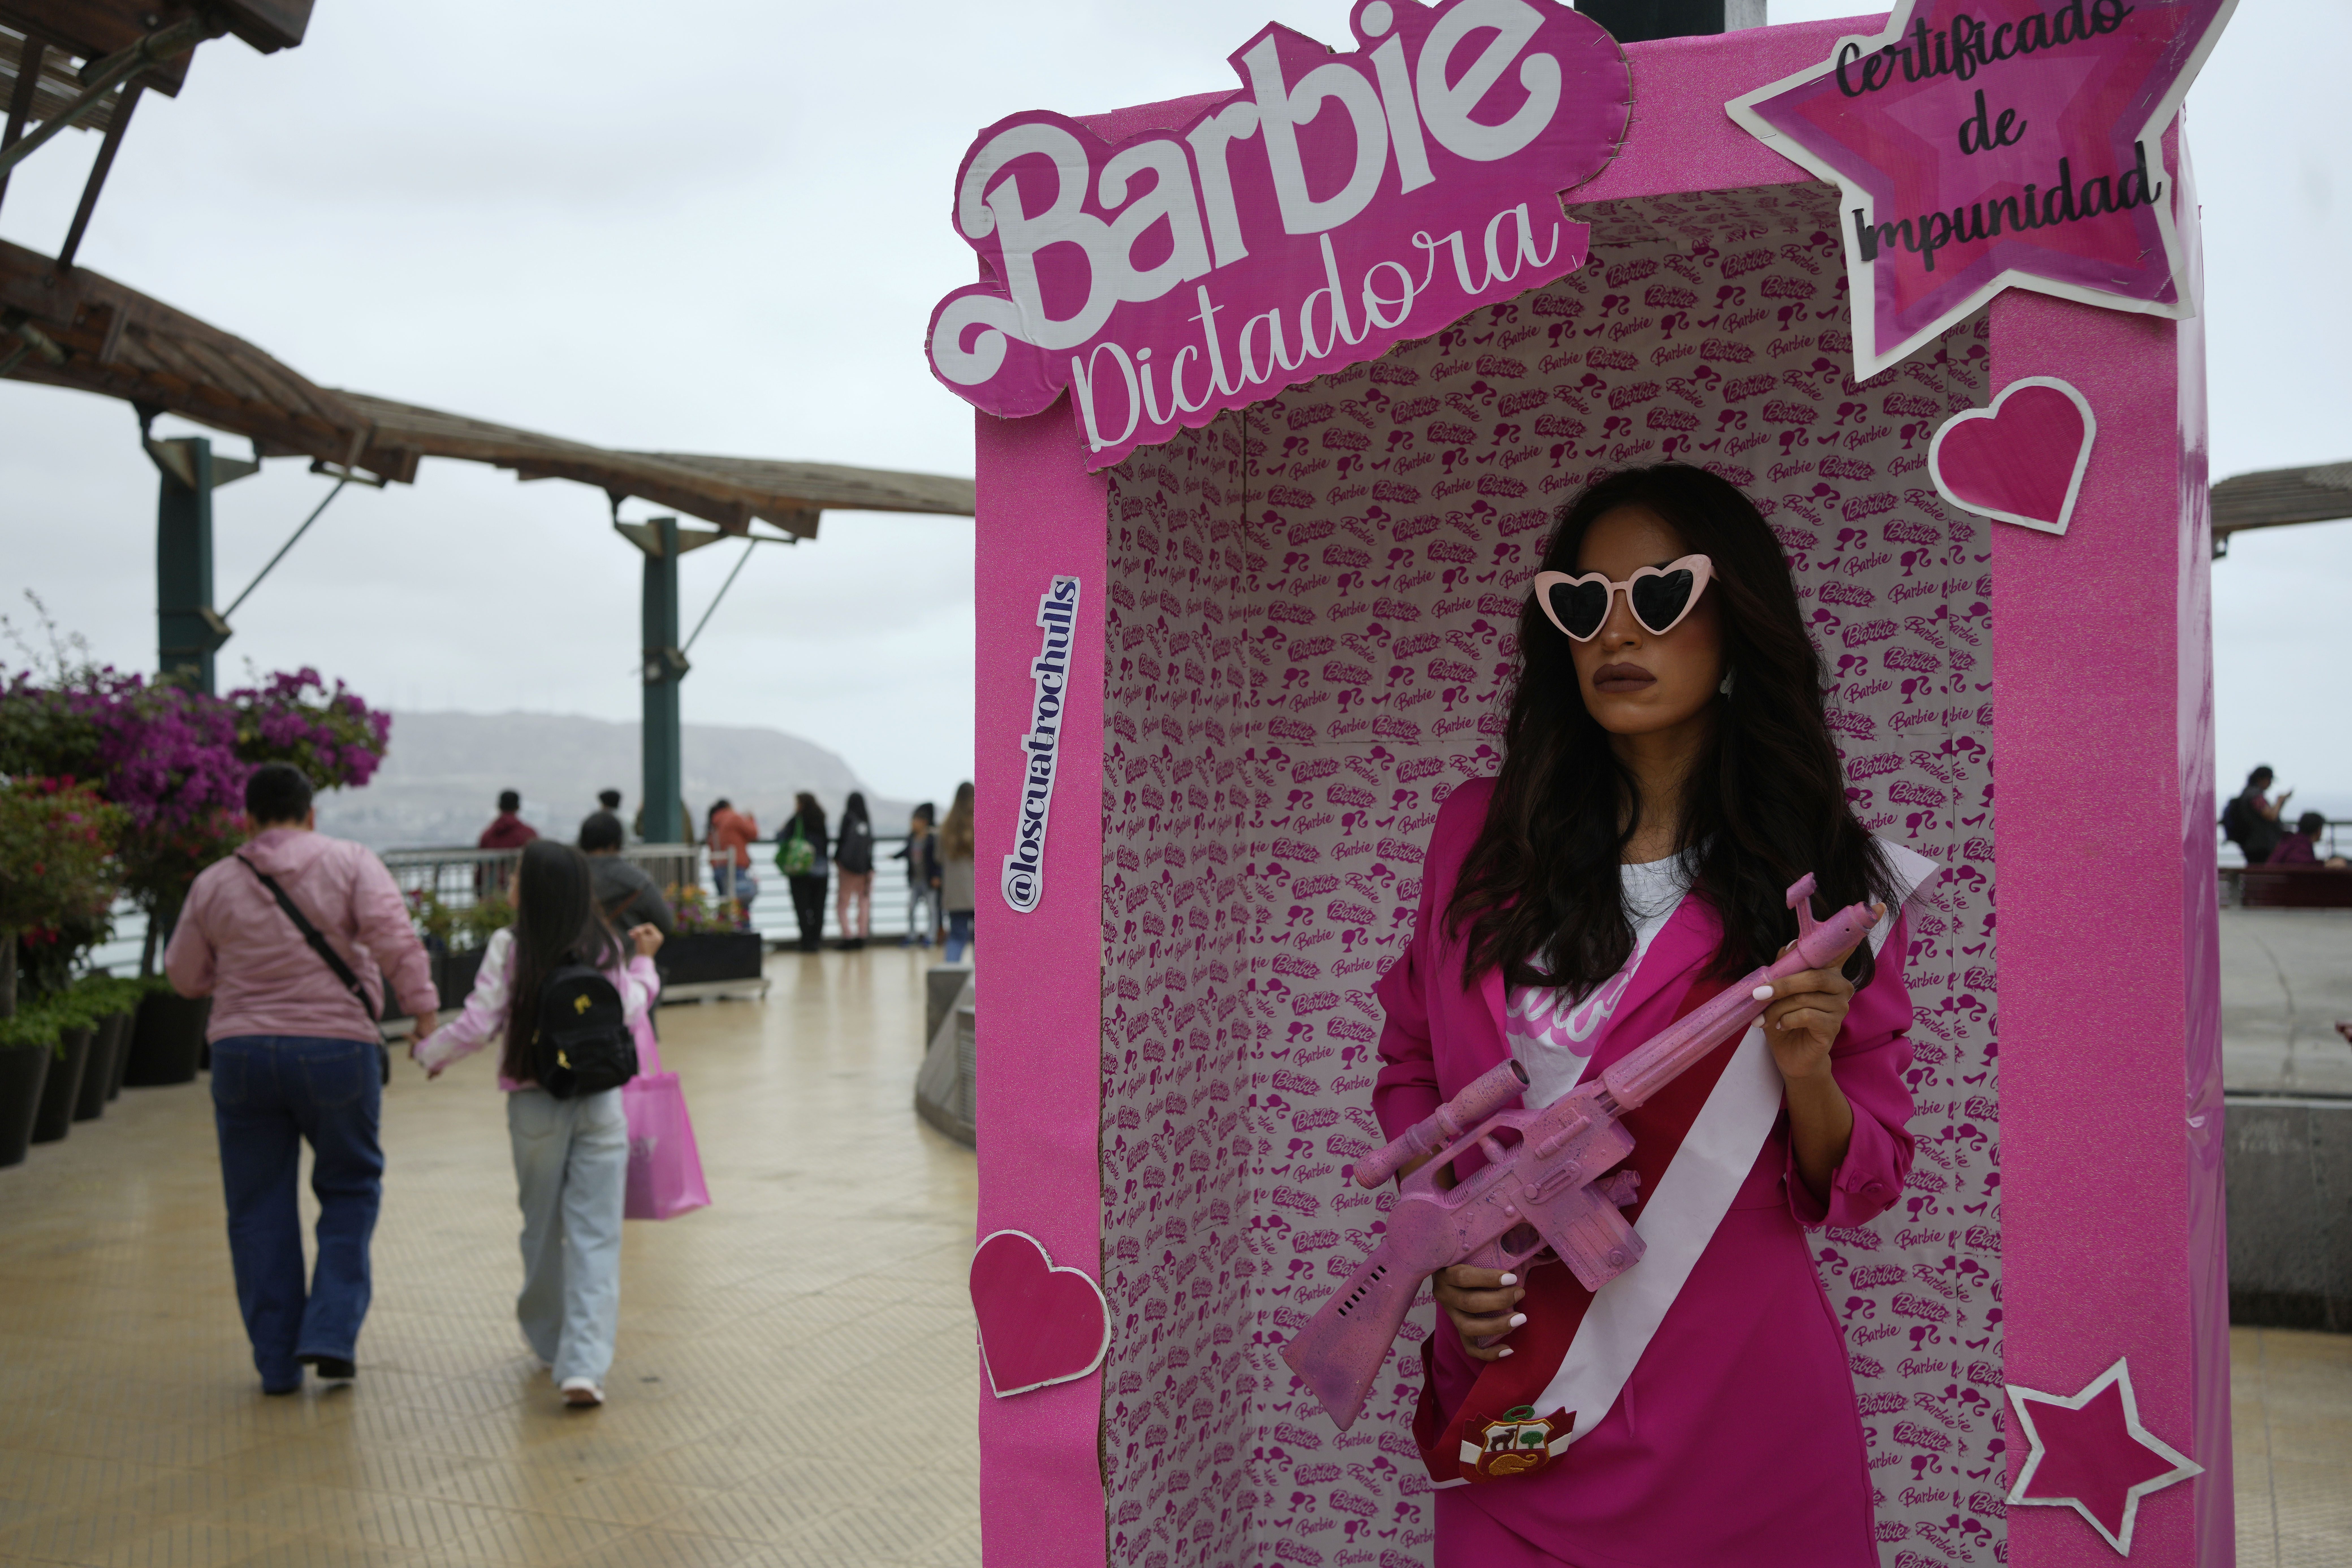 Lateinamerika empfängt Barbie mit rosa Tacos, Parodien und Protesten